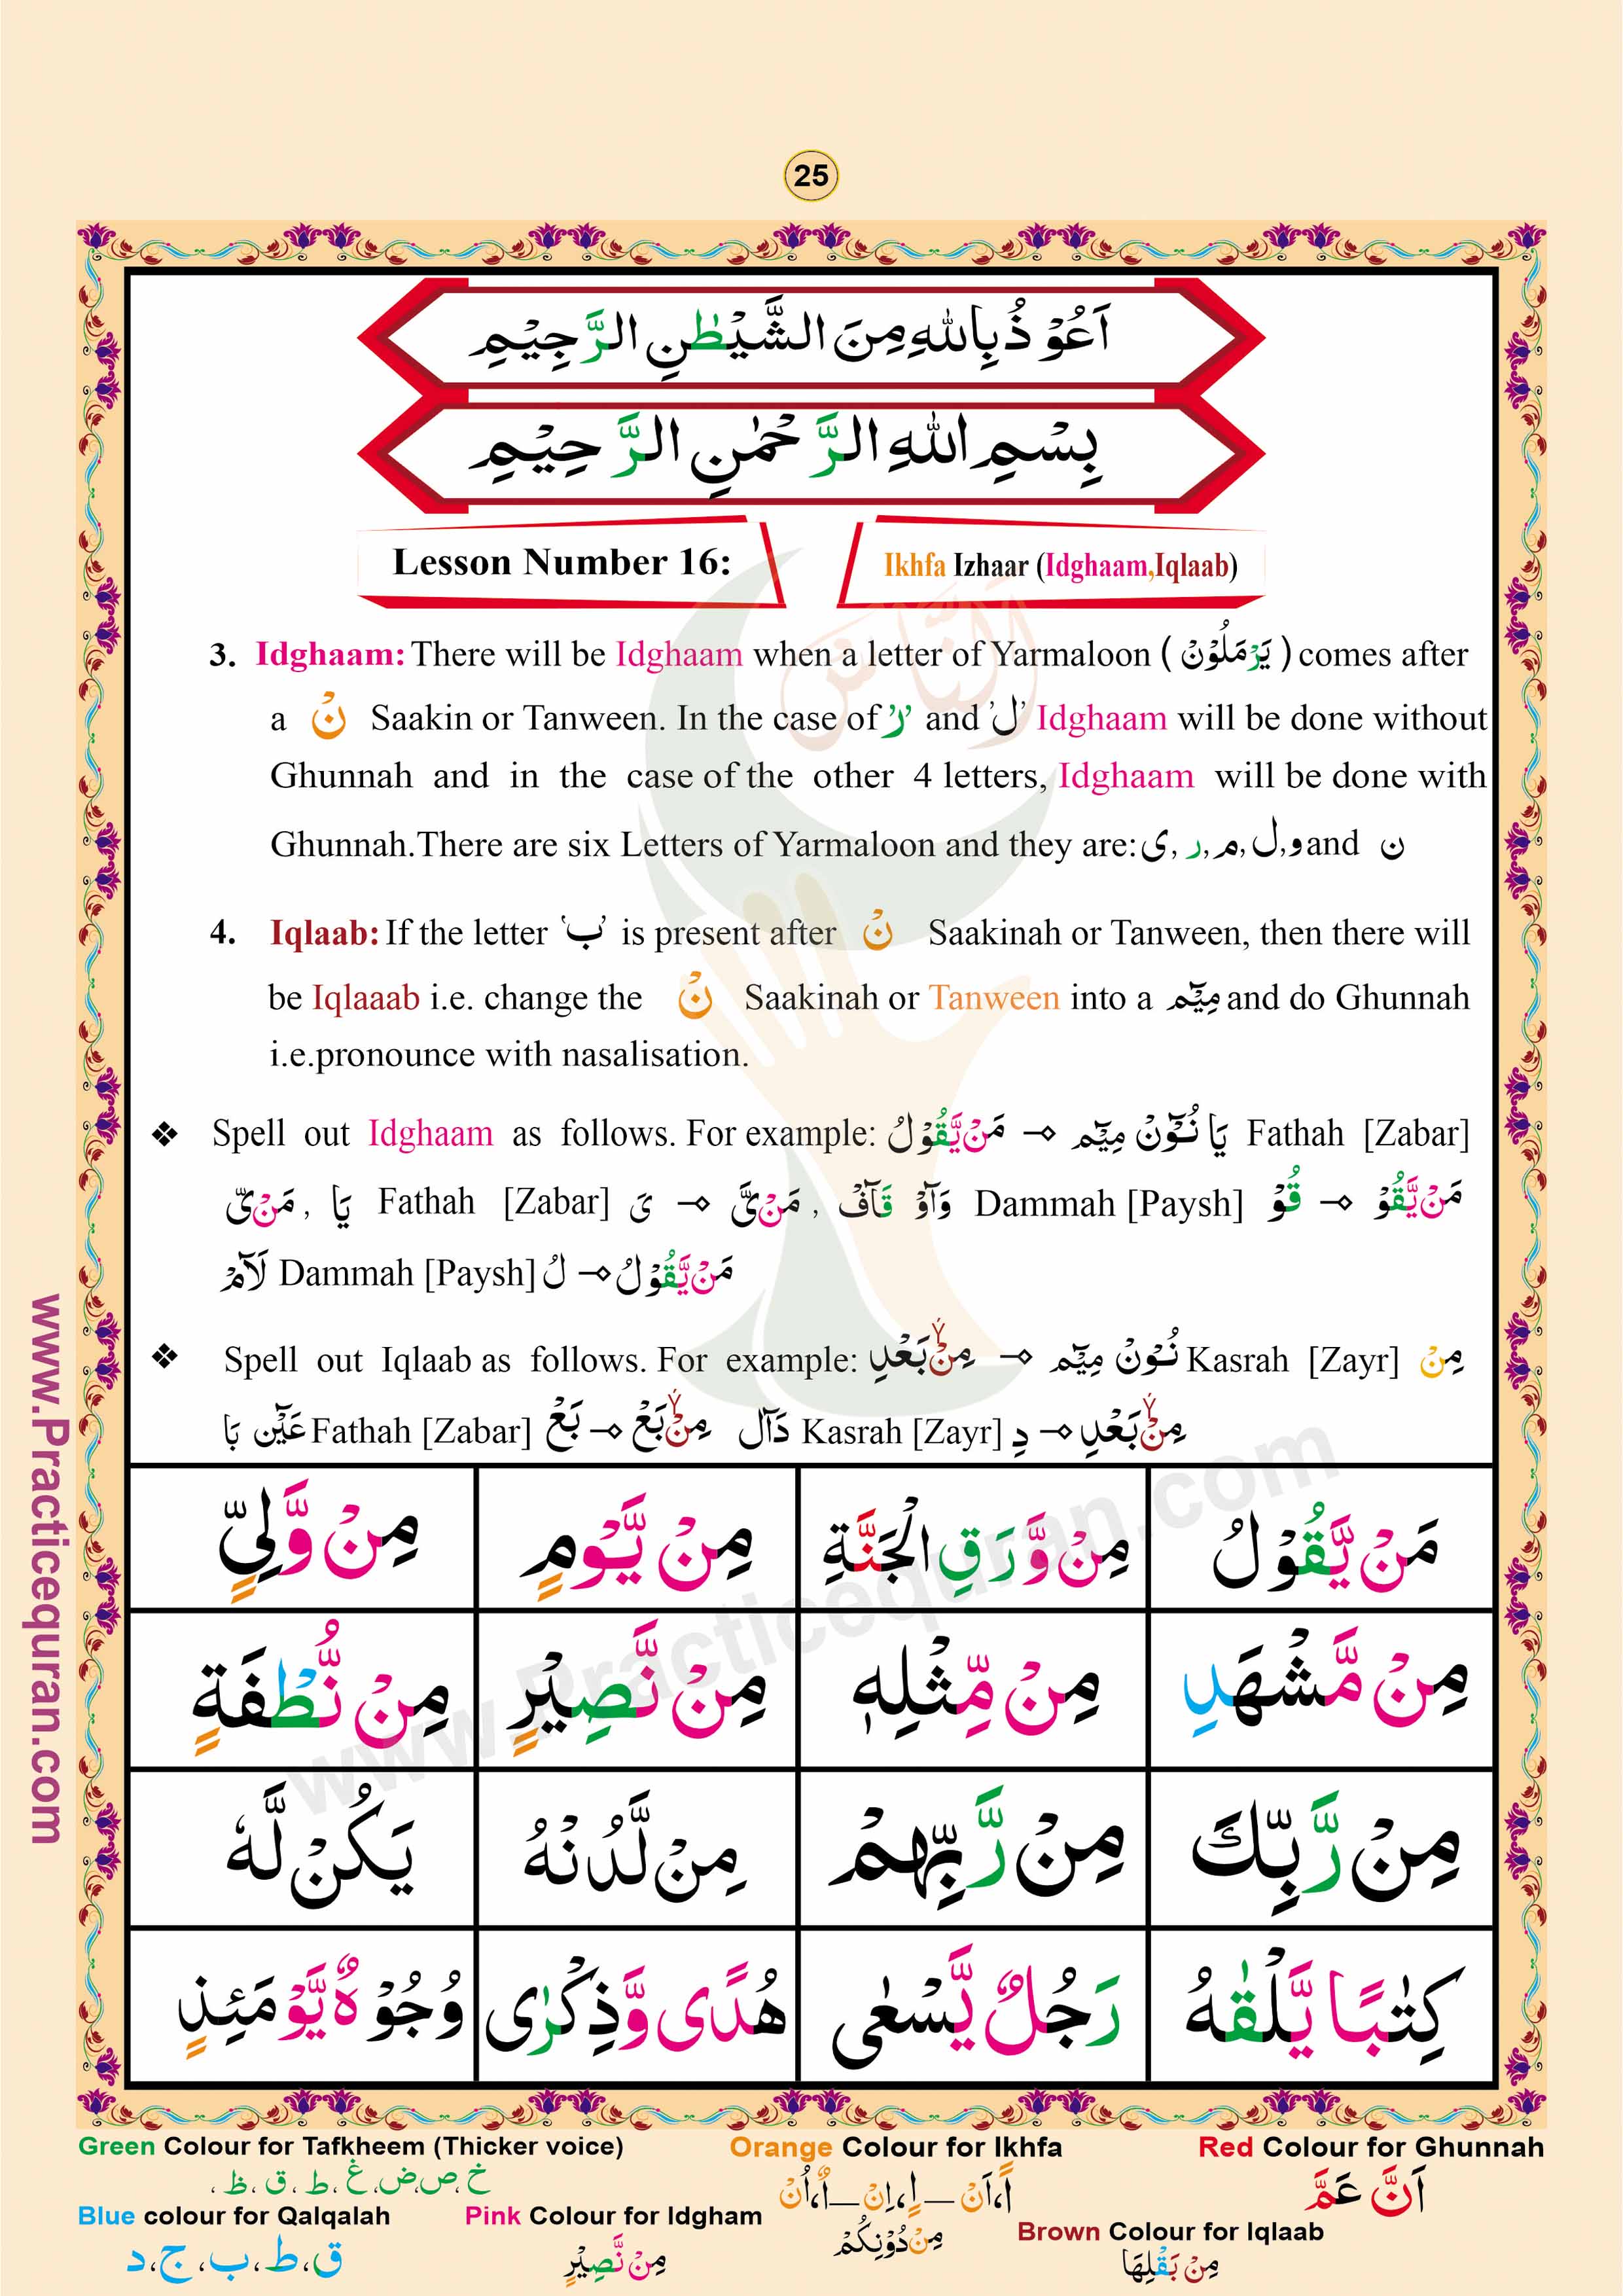 Read English Noorani Qaidah Page No 25, Practice Quran